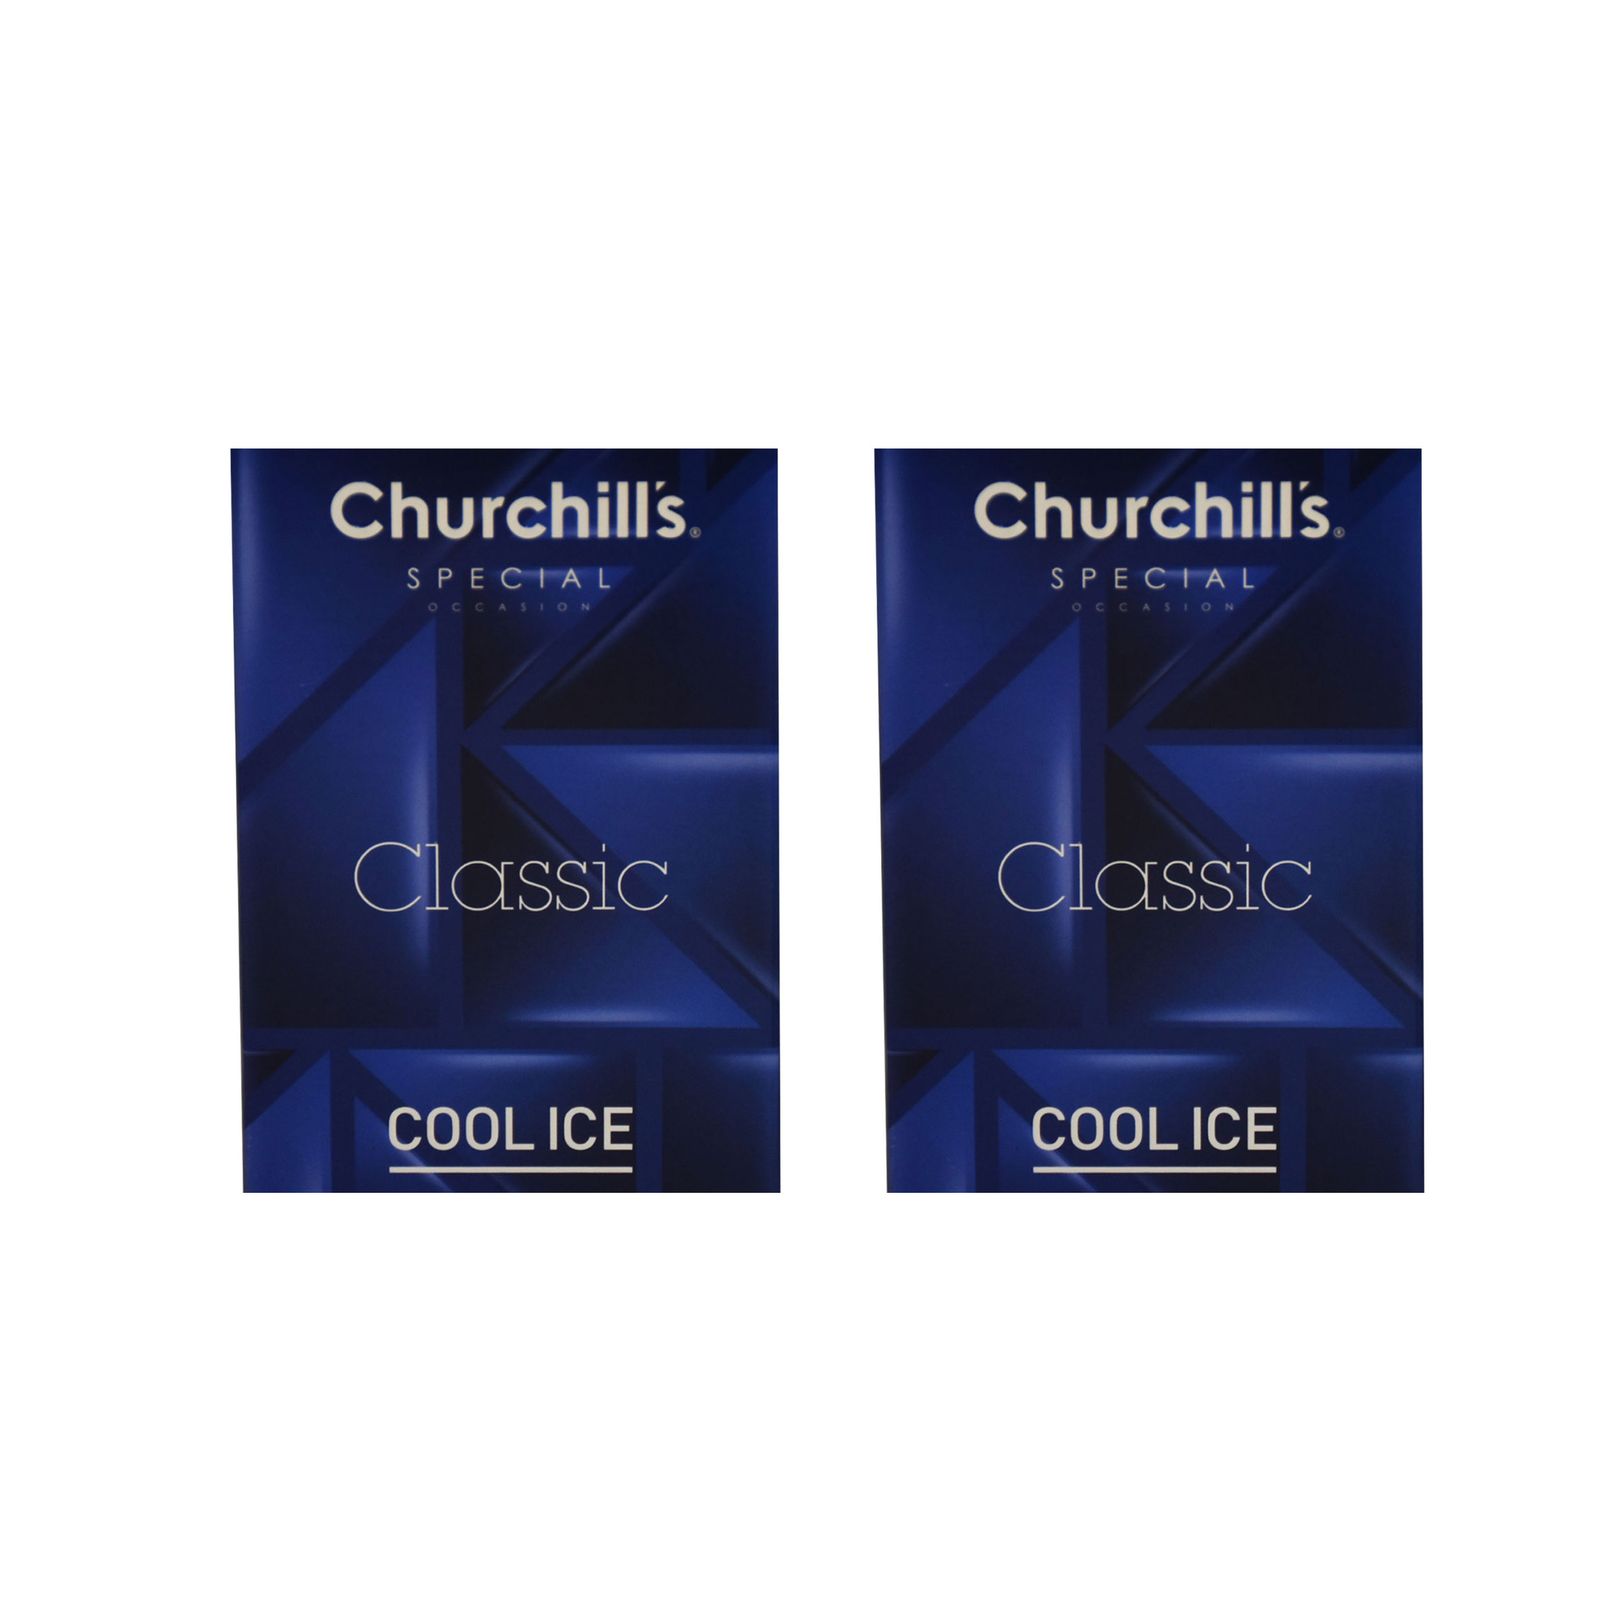 کاندوم چرچیلز مدل Classic Cool Ice مجموعه 2 عددی -  - 3